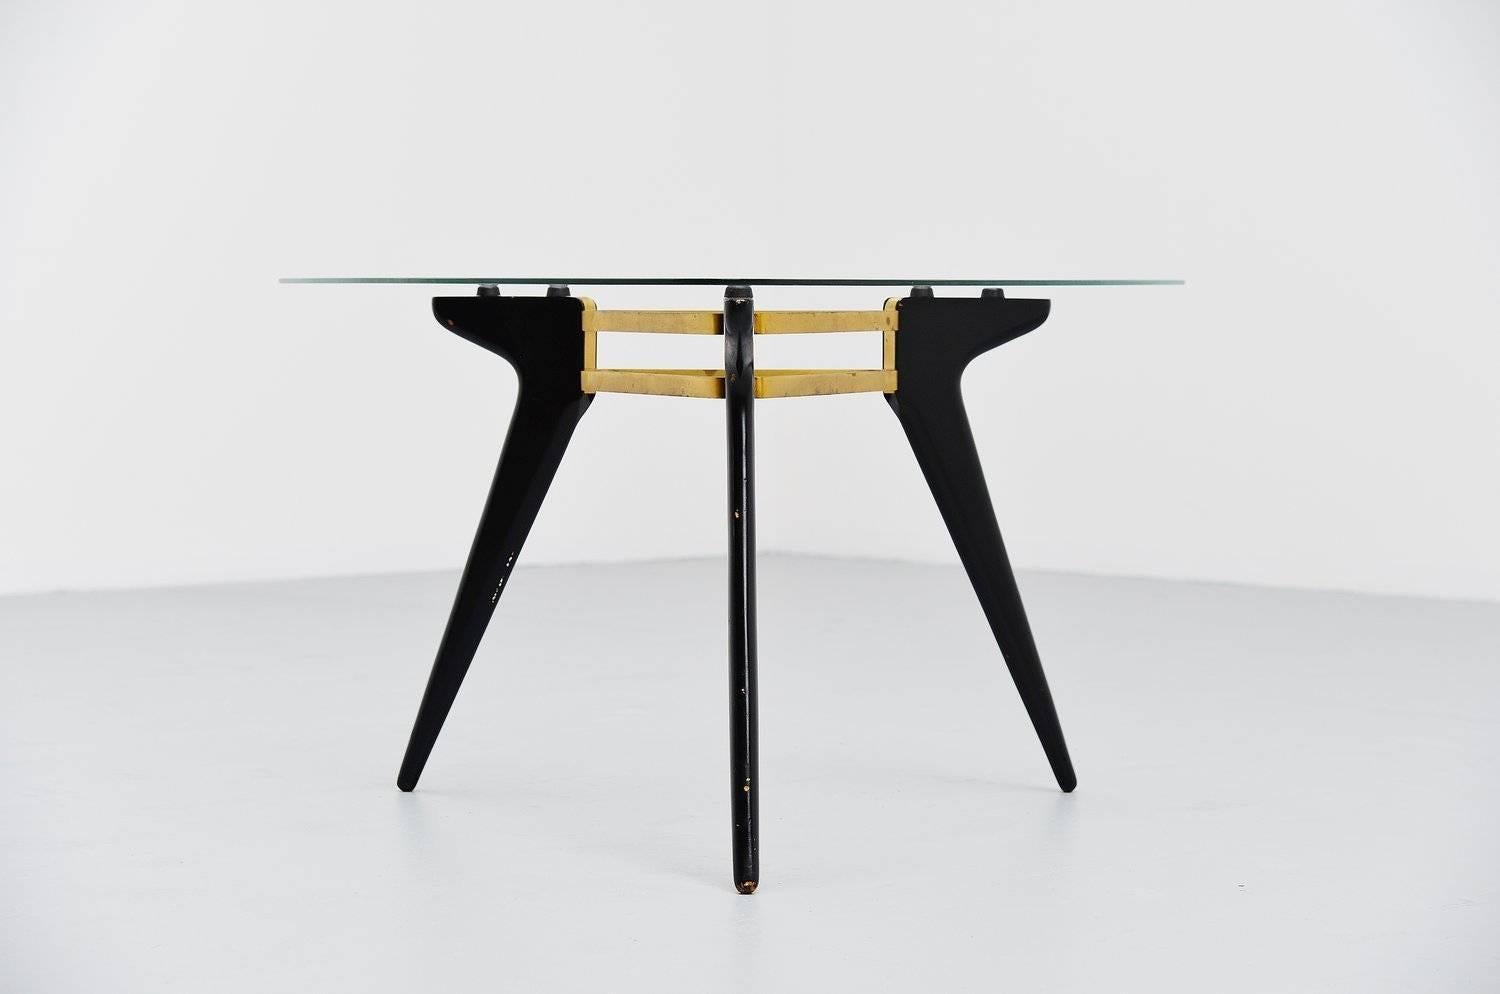 Très belle table basse belge avec des pieds en bois laqué noir, un cadre connecté en laiton et un plateau en verre triangulaire. Il date certainement de la fin des années 1950, mais nous ne connaissons ni le fabricant ni le concepteur. Probablement